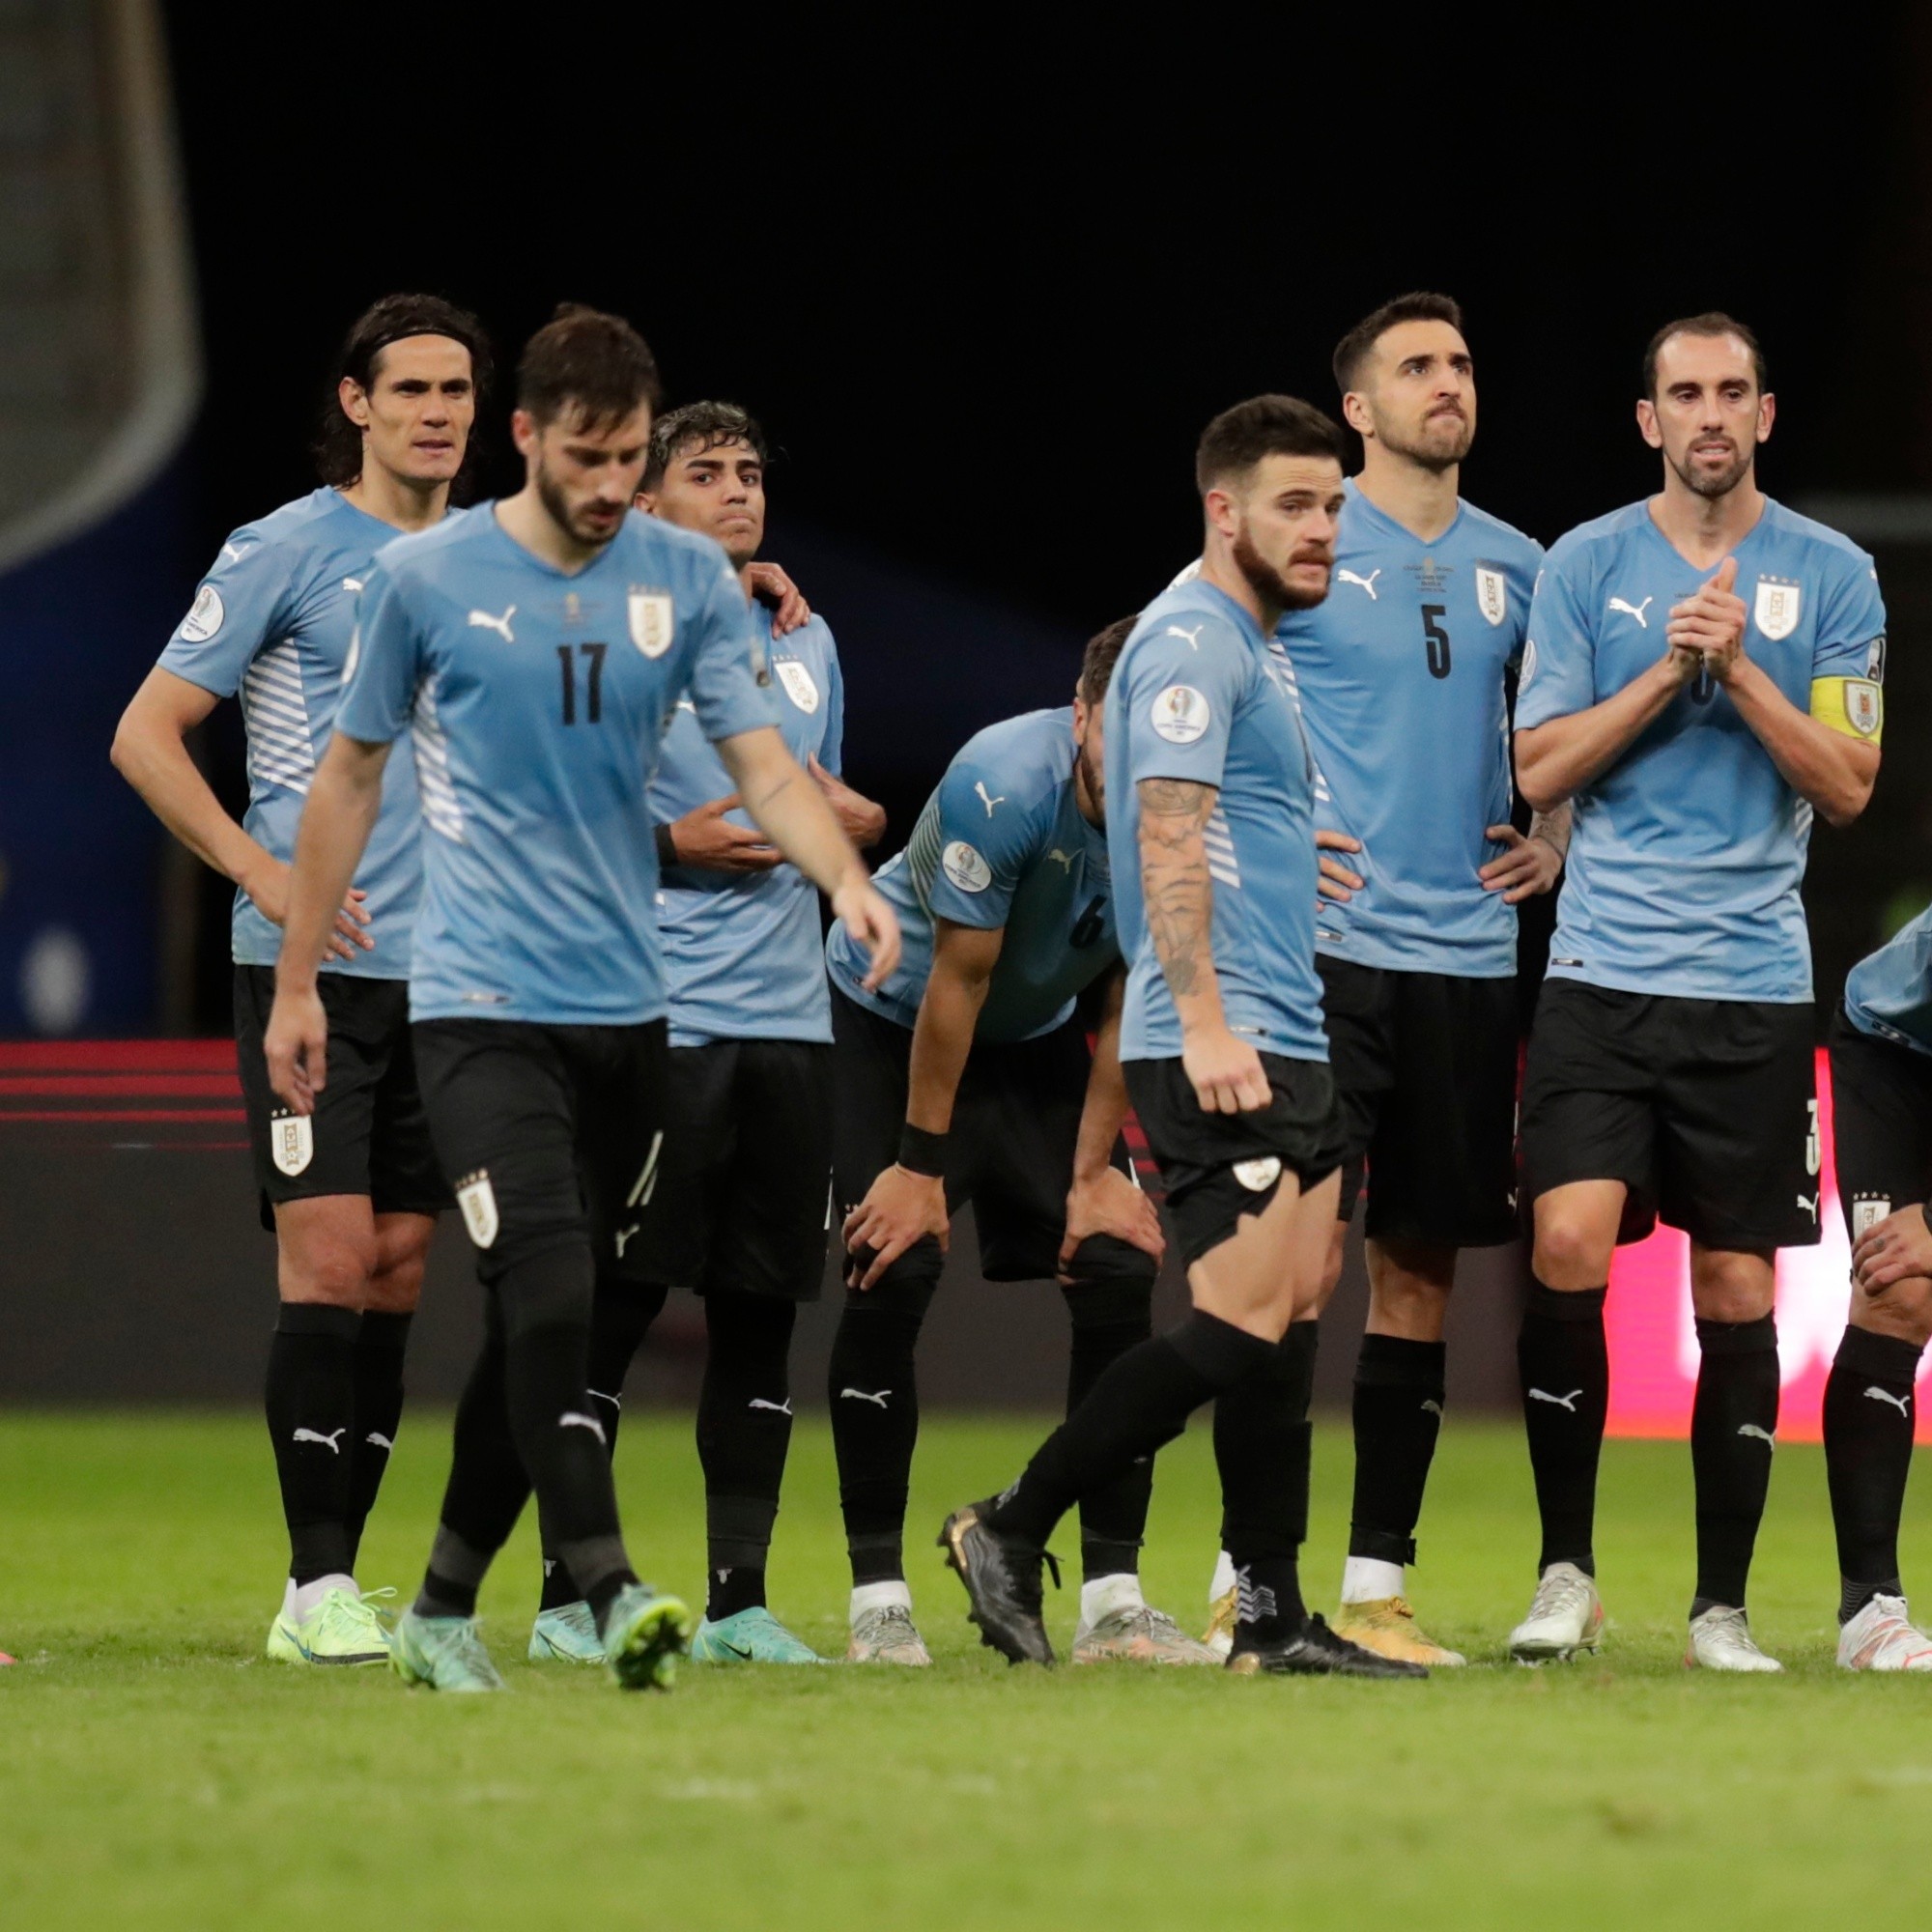 Asociación Uruguaya de Fútbol se niega a quitar dos estrellas de su escudo  a pesar de la petición de FIFA, Noticias de México